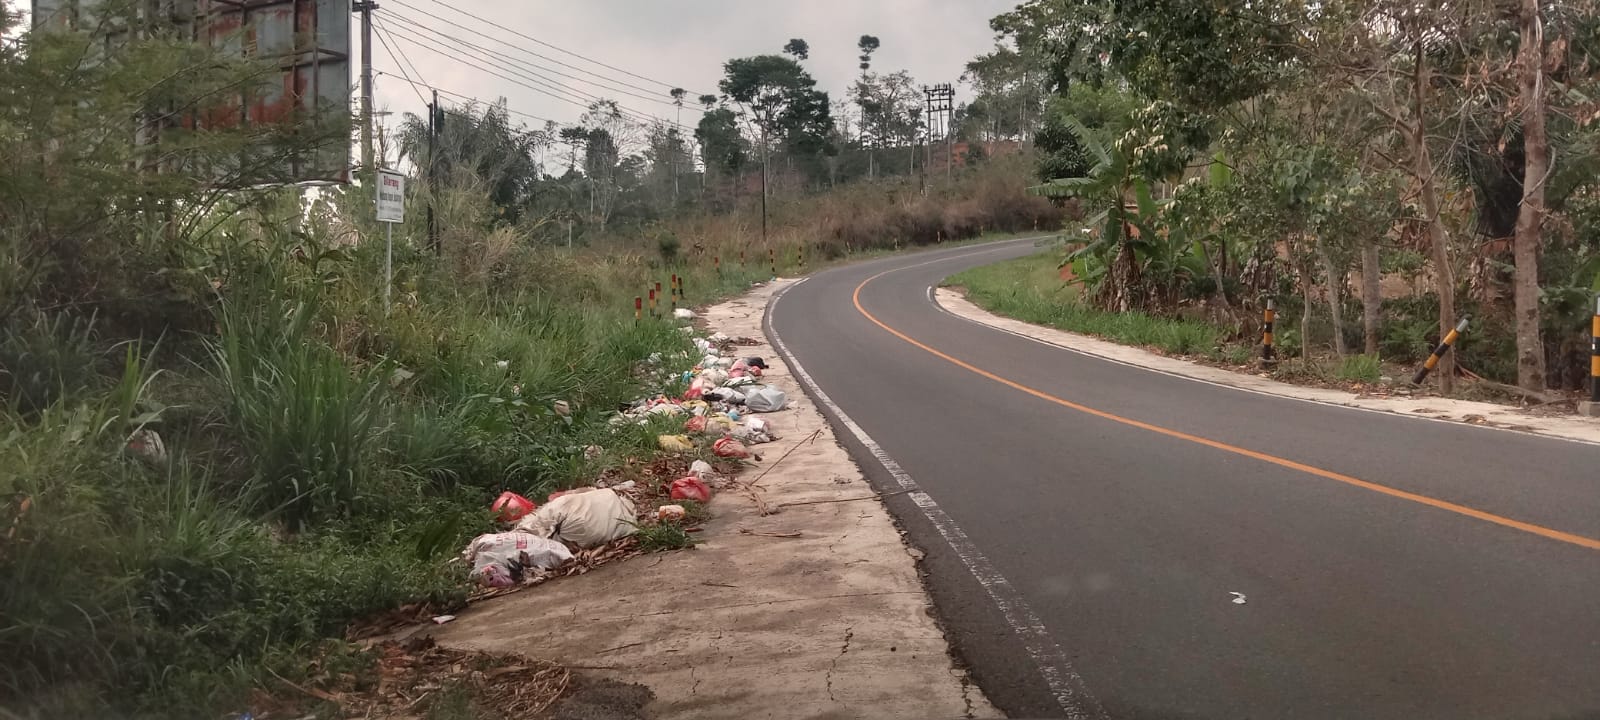 Peratin dan Camat Murka Melihat Tumpukan Sampah Dibuang Sembarangan di Tegajul